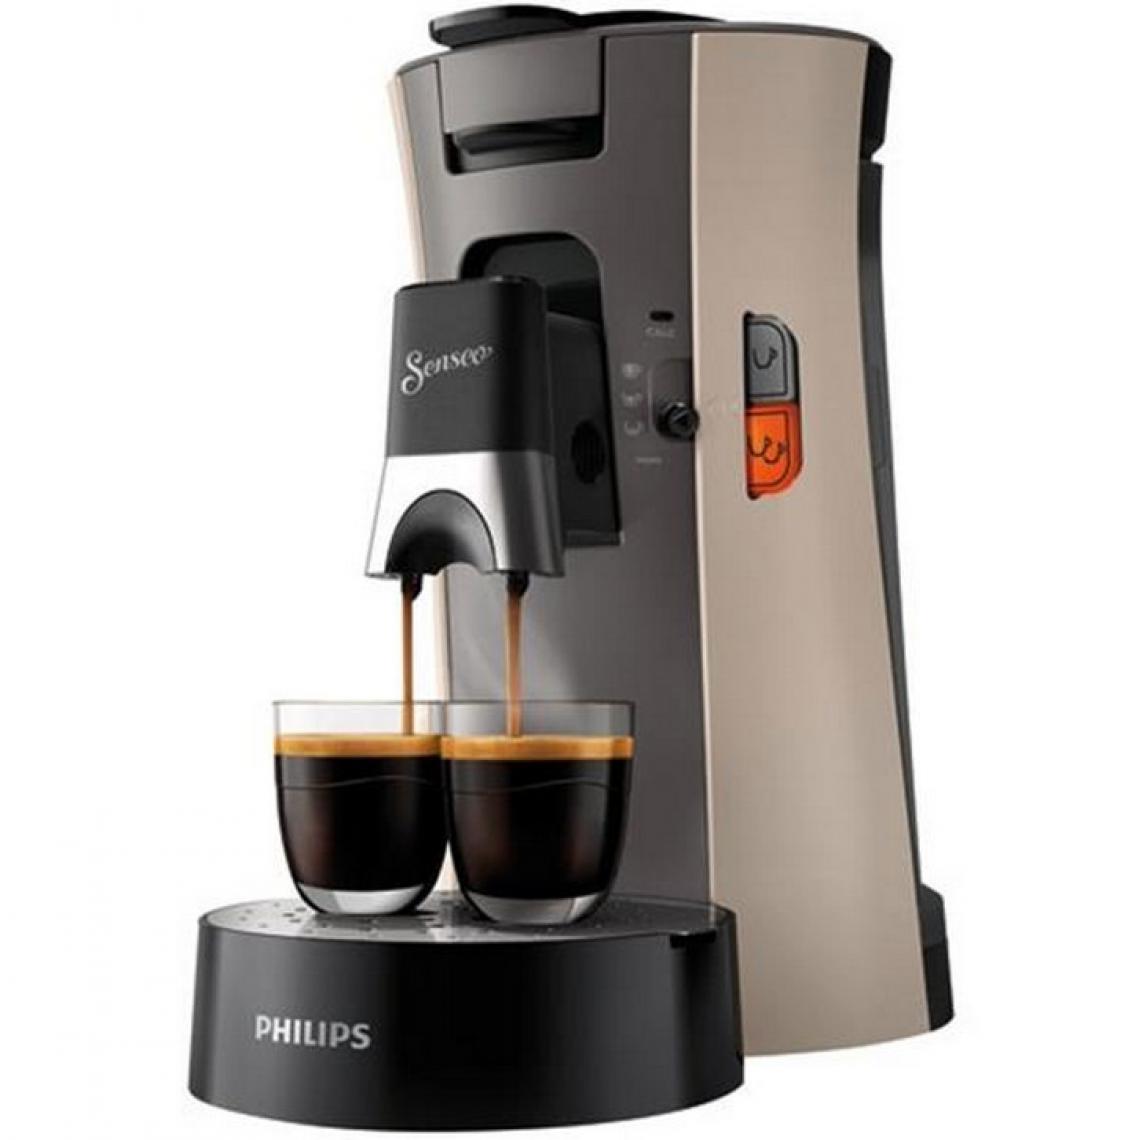 Philips - PHILIPS SENSEO Select CSA240/31 Machine a café dosettes - Nougat - Expresso - Cafetière